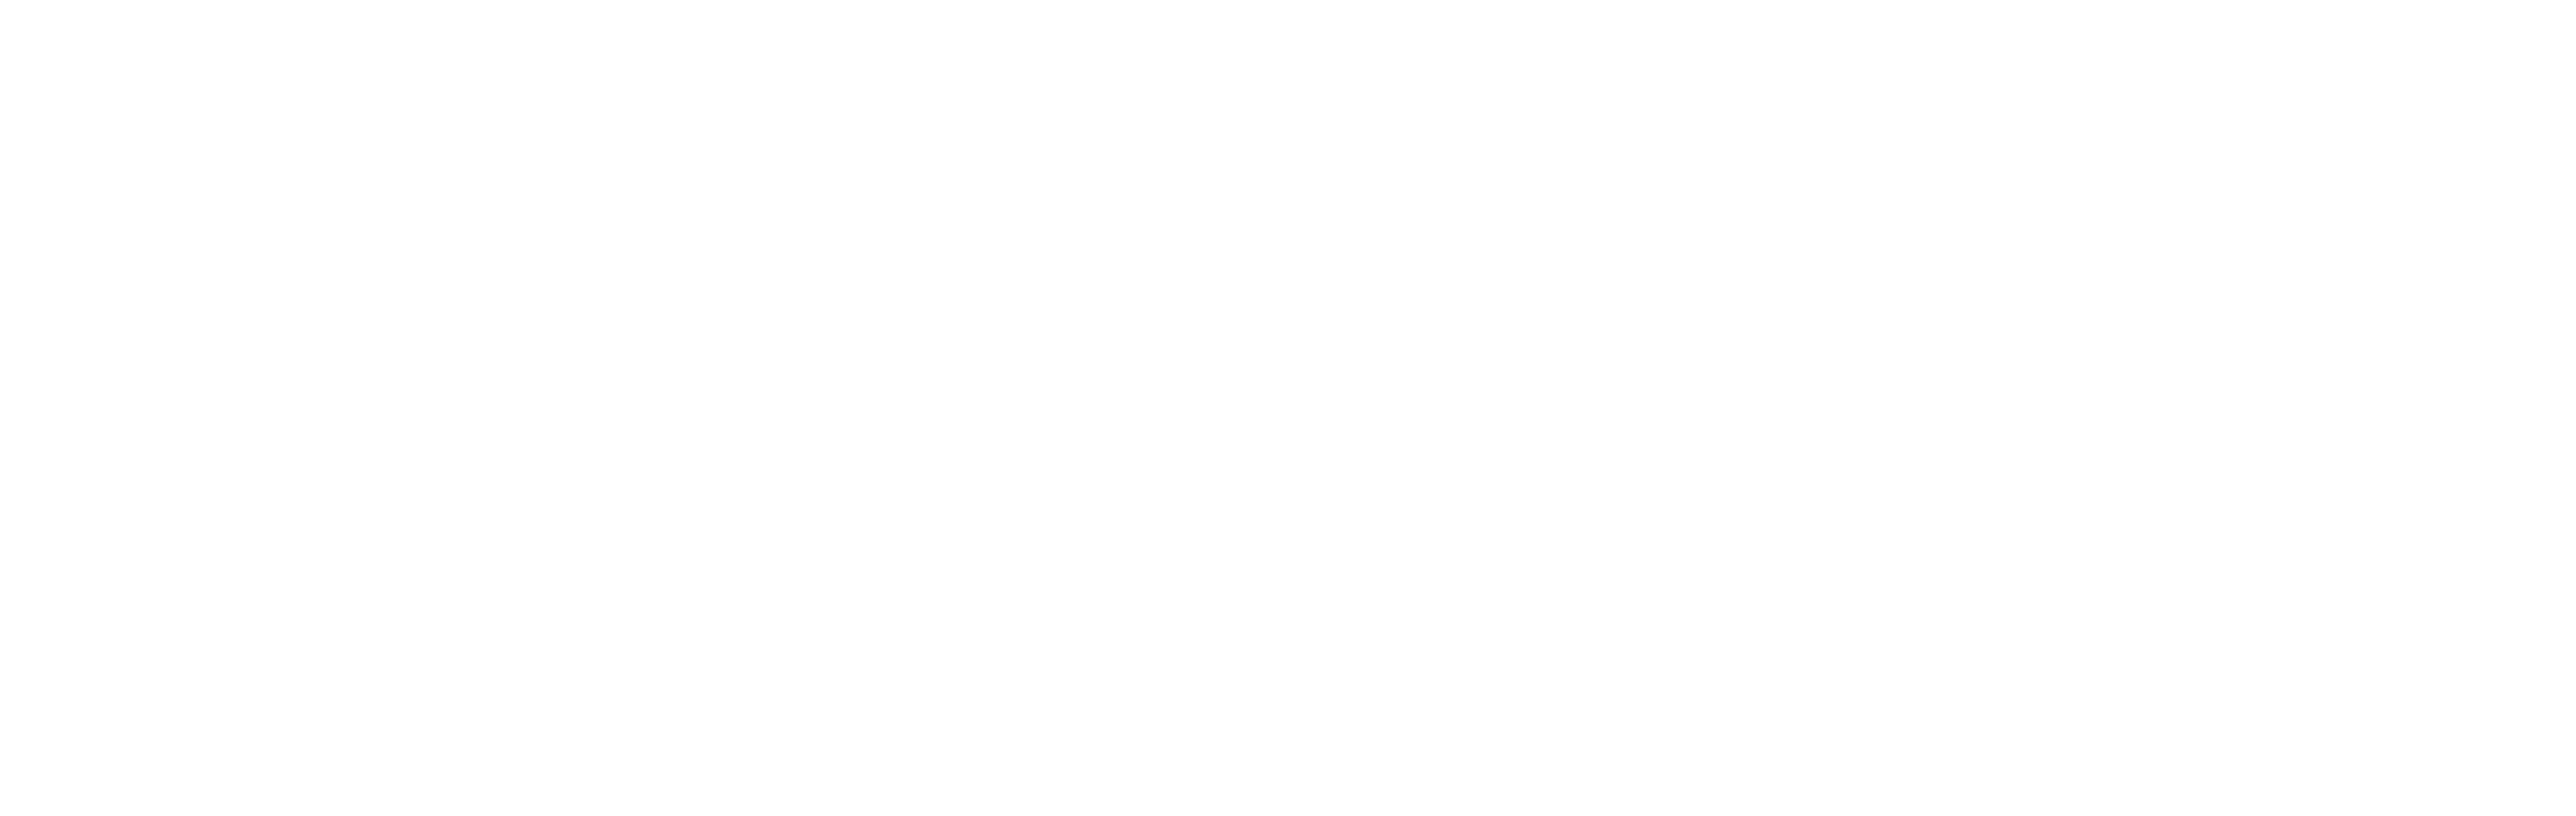 Sabotage logo